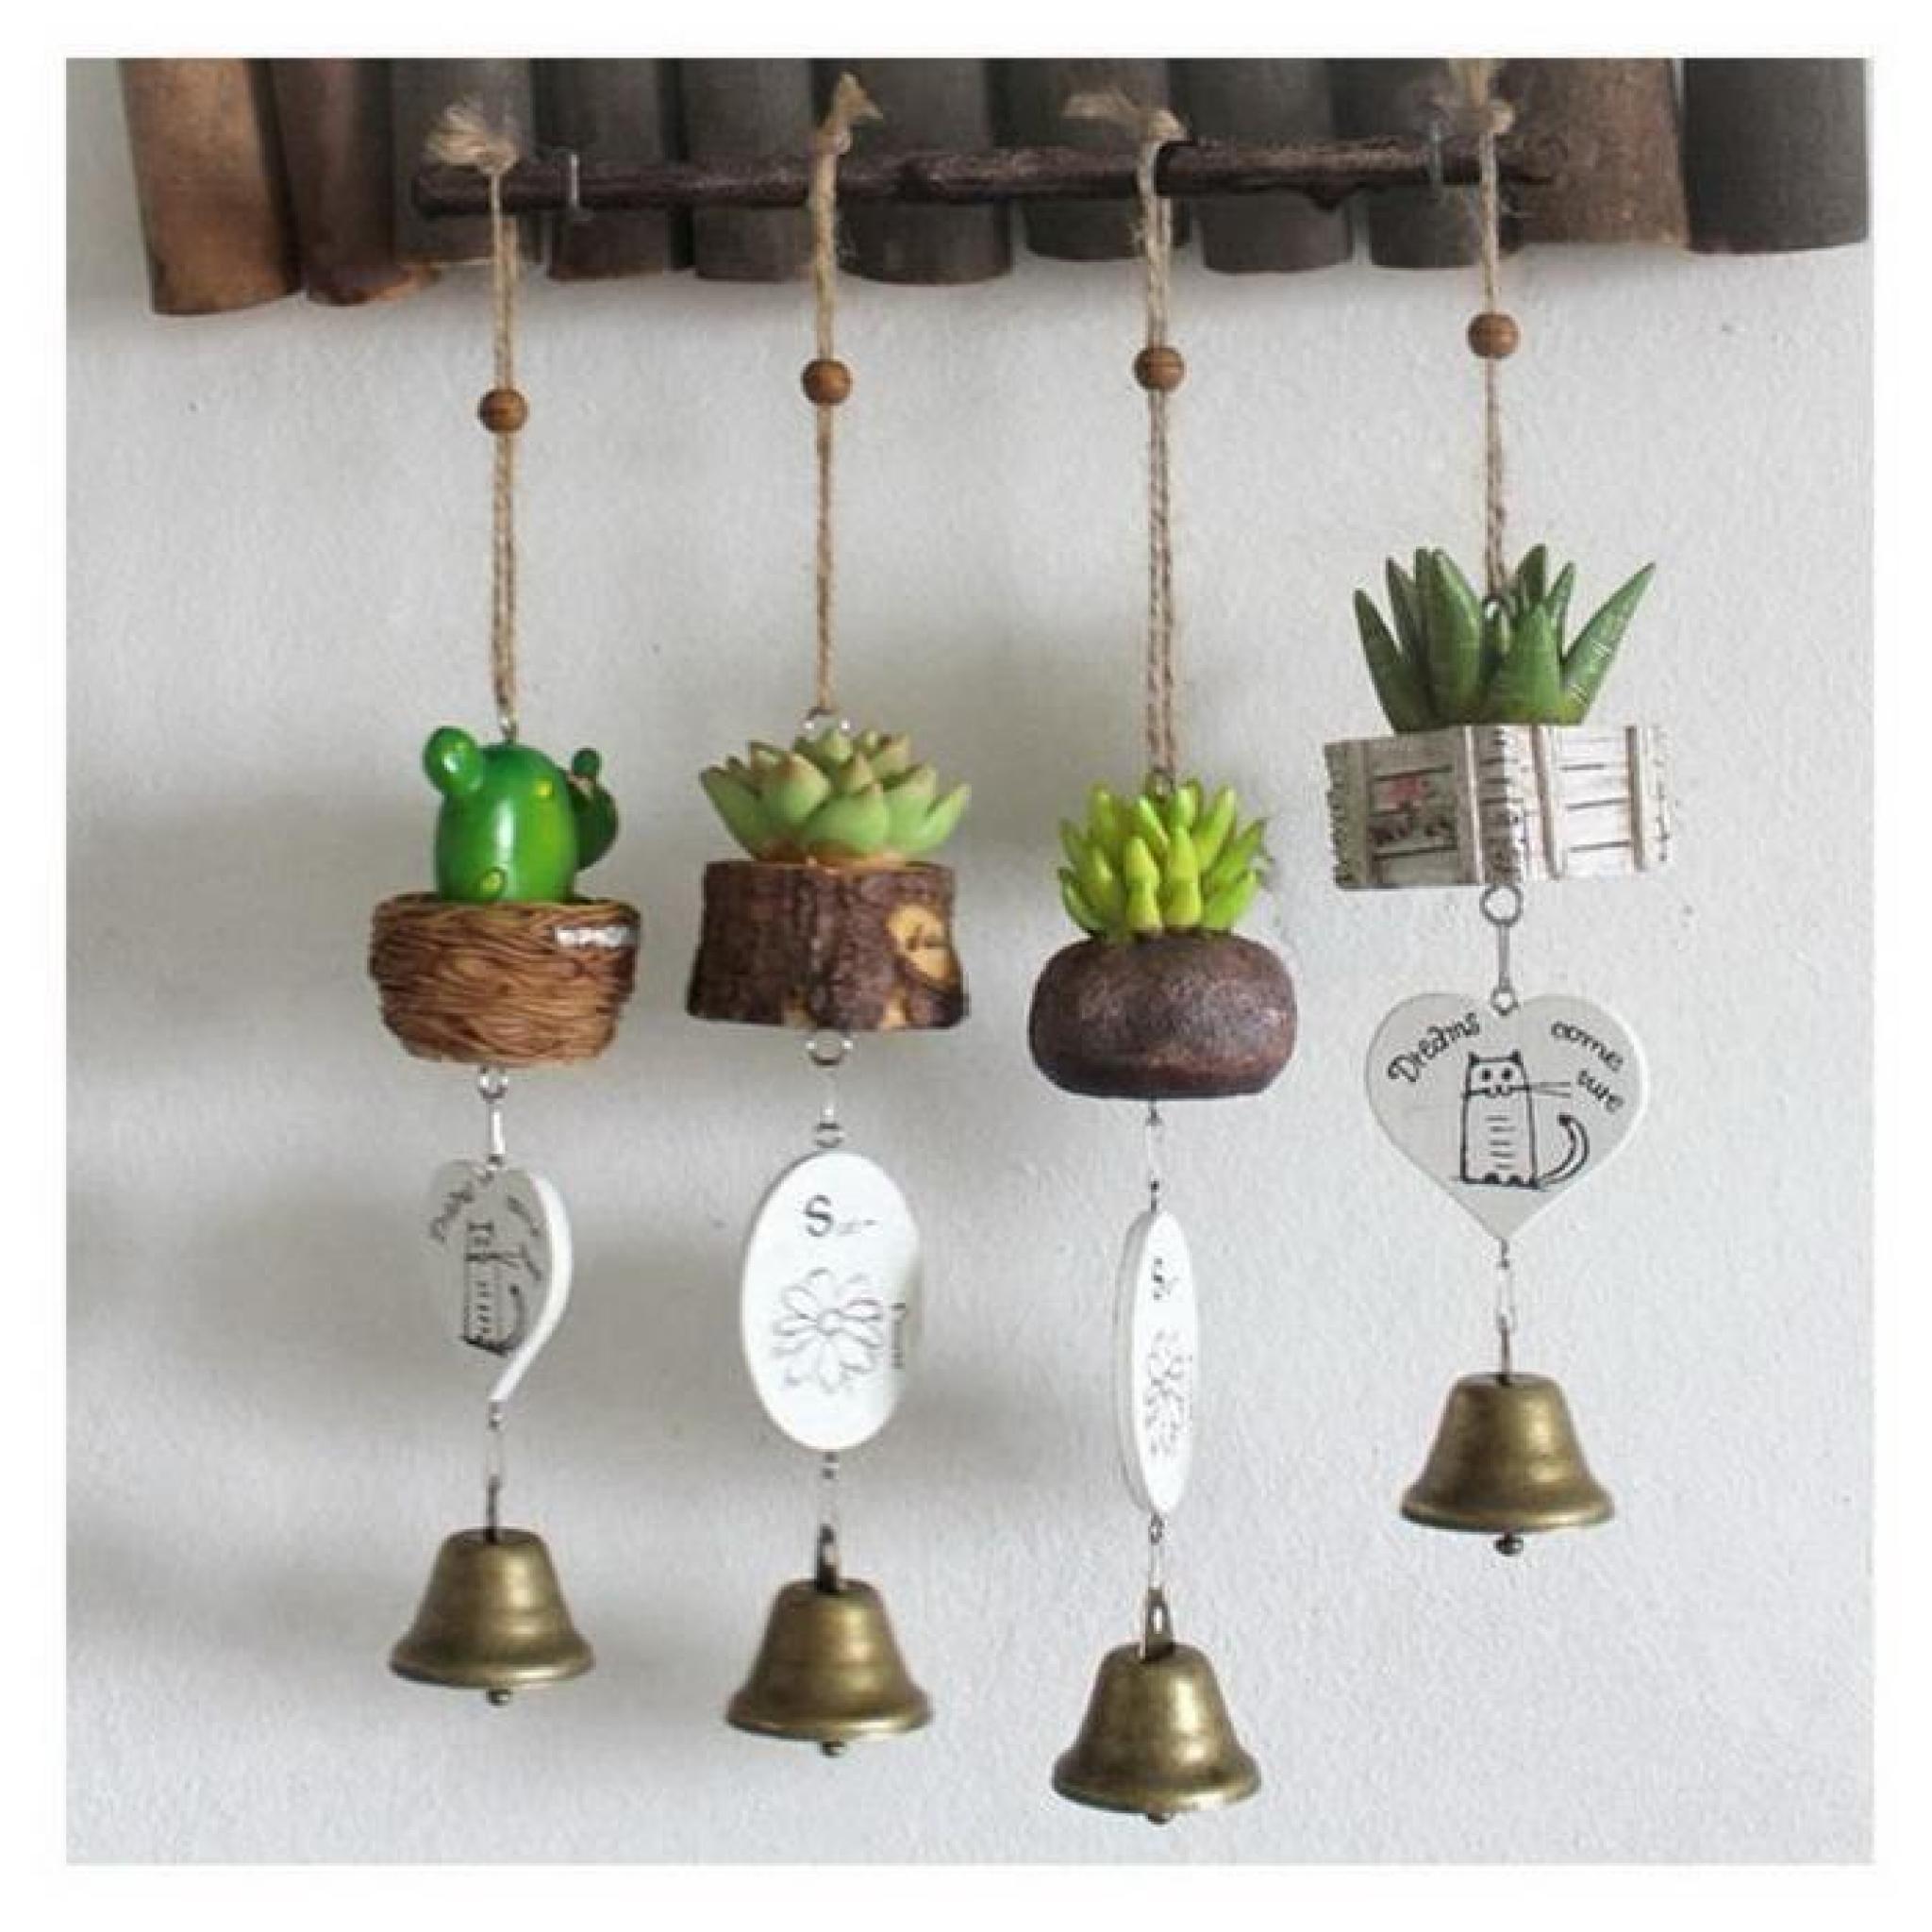 délicate campanula / créative carillons à vents, joli cactus pas cher